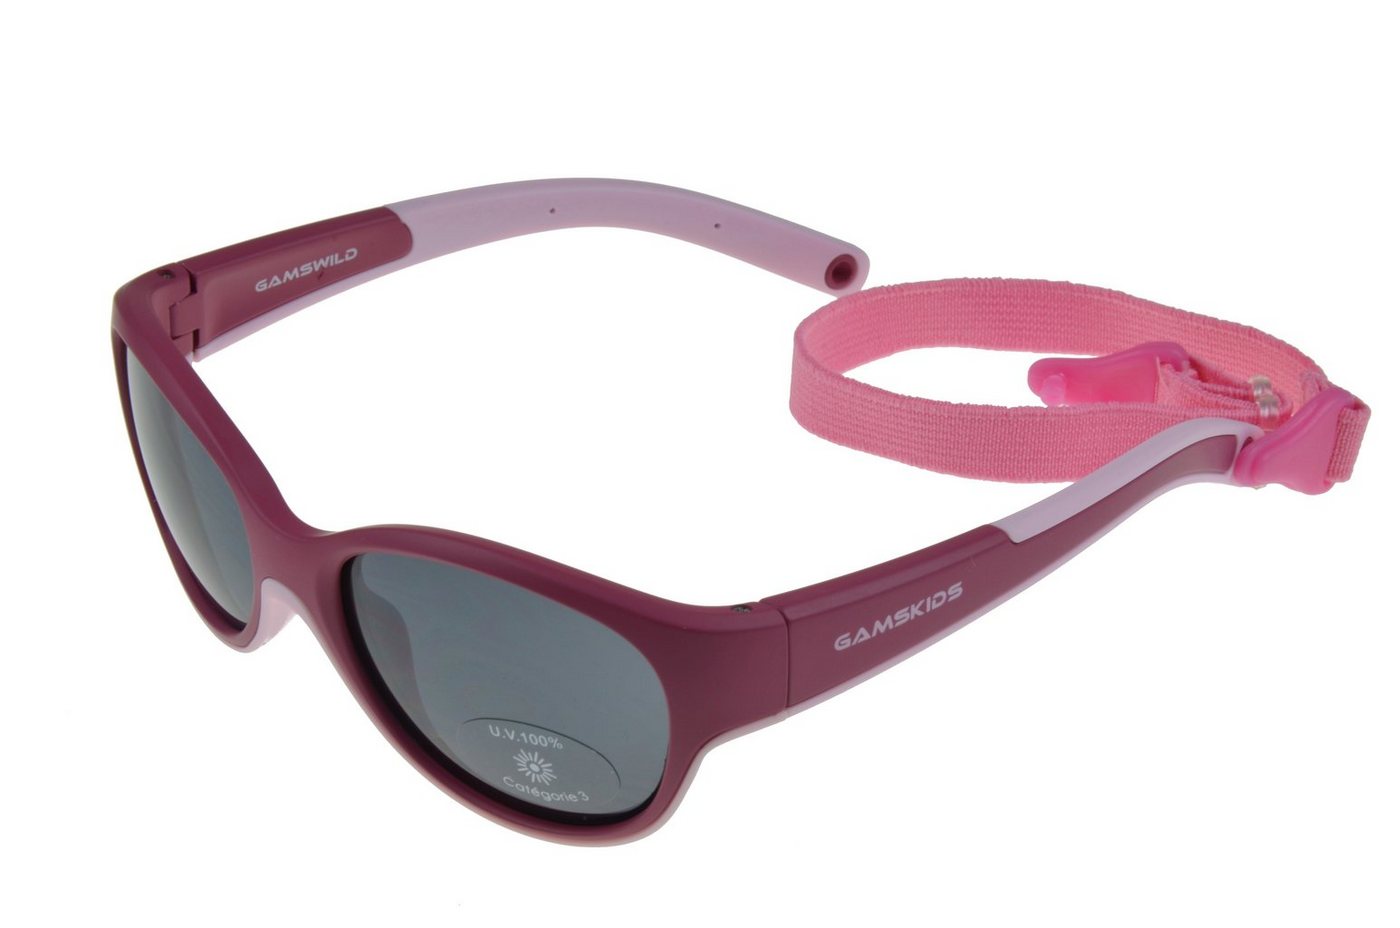 Gamswild Sonnenbrille UV400 GAMSKIDS Kinderbrille 2-5 Jahre Kleinkindbrill mit Brillenband Mädchen Jungen kids Unisex Modell WK7421 in mintgrün, pink, rot-orange von Gamswild